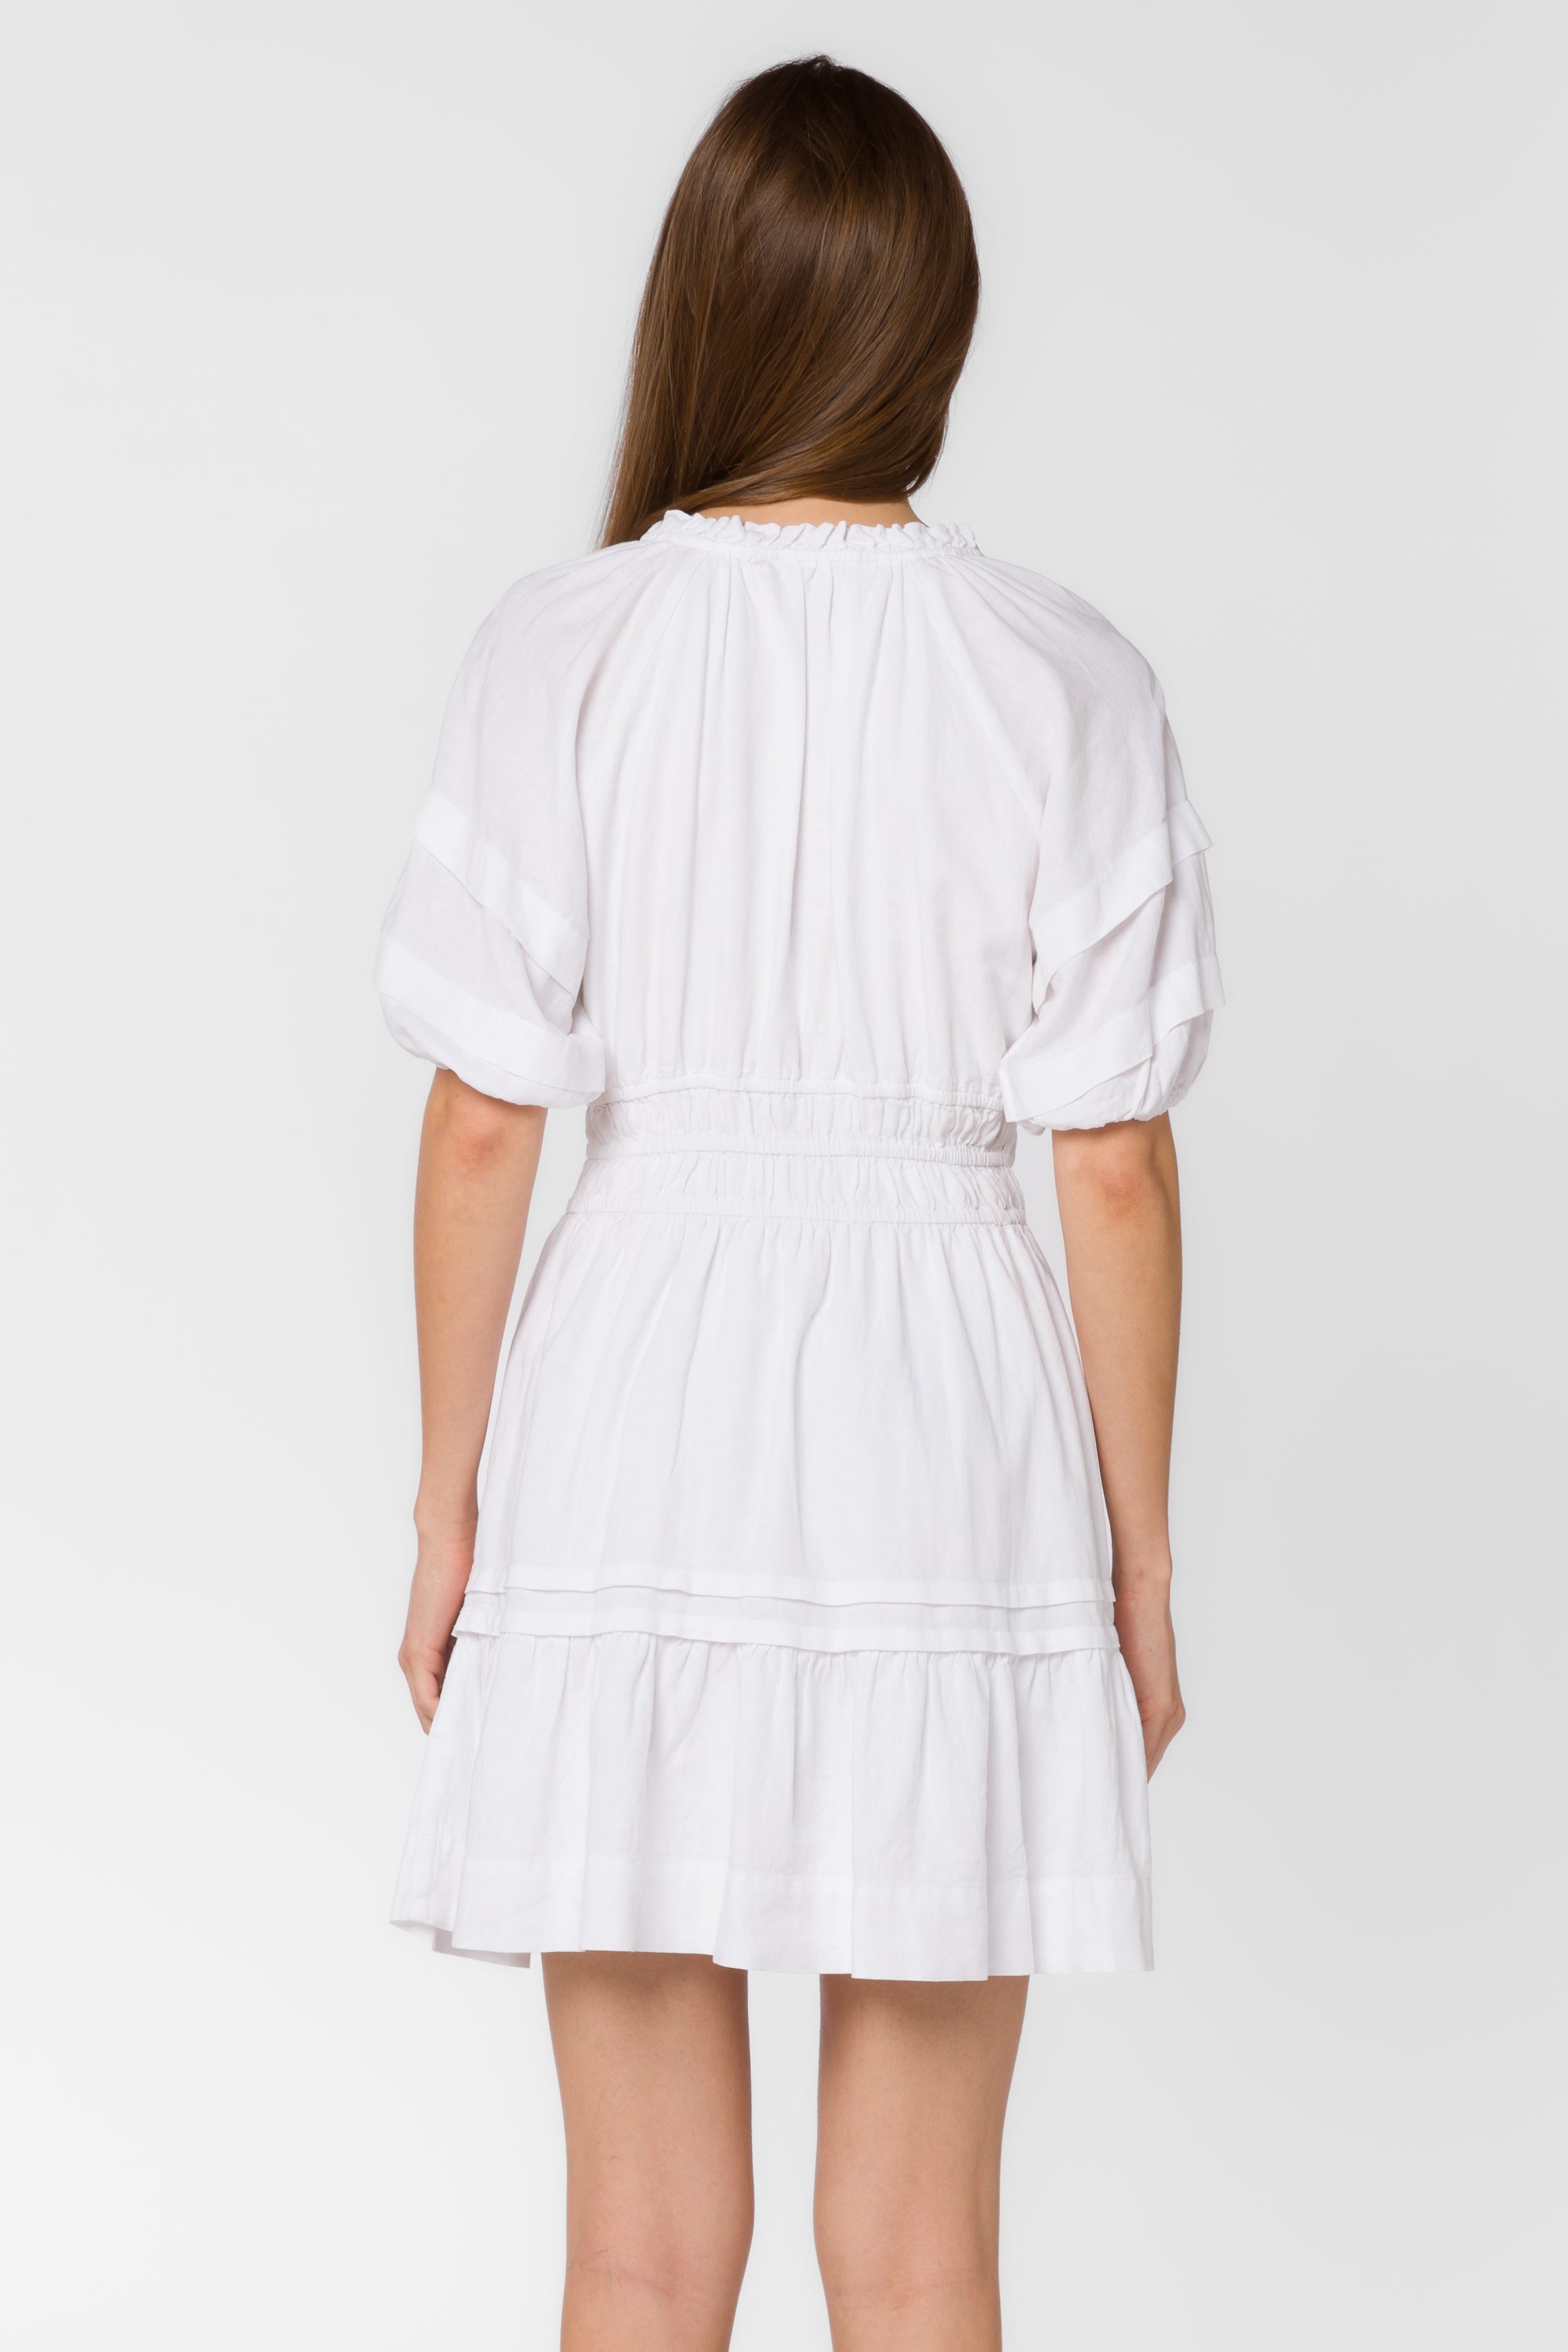 Donna Optic White Dress - Dresses - Velvet Heart Clothing